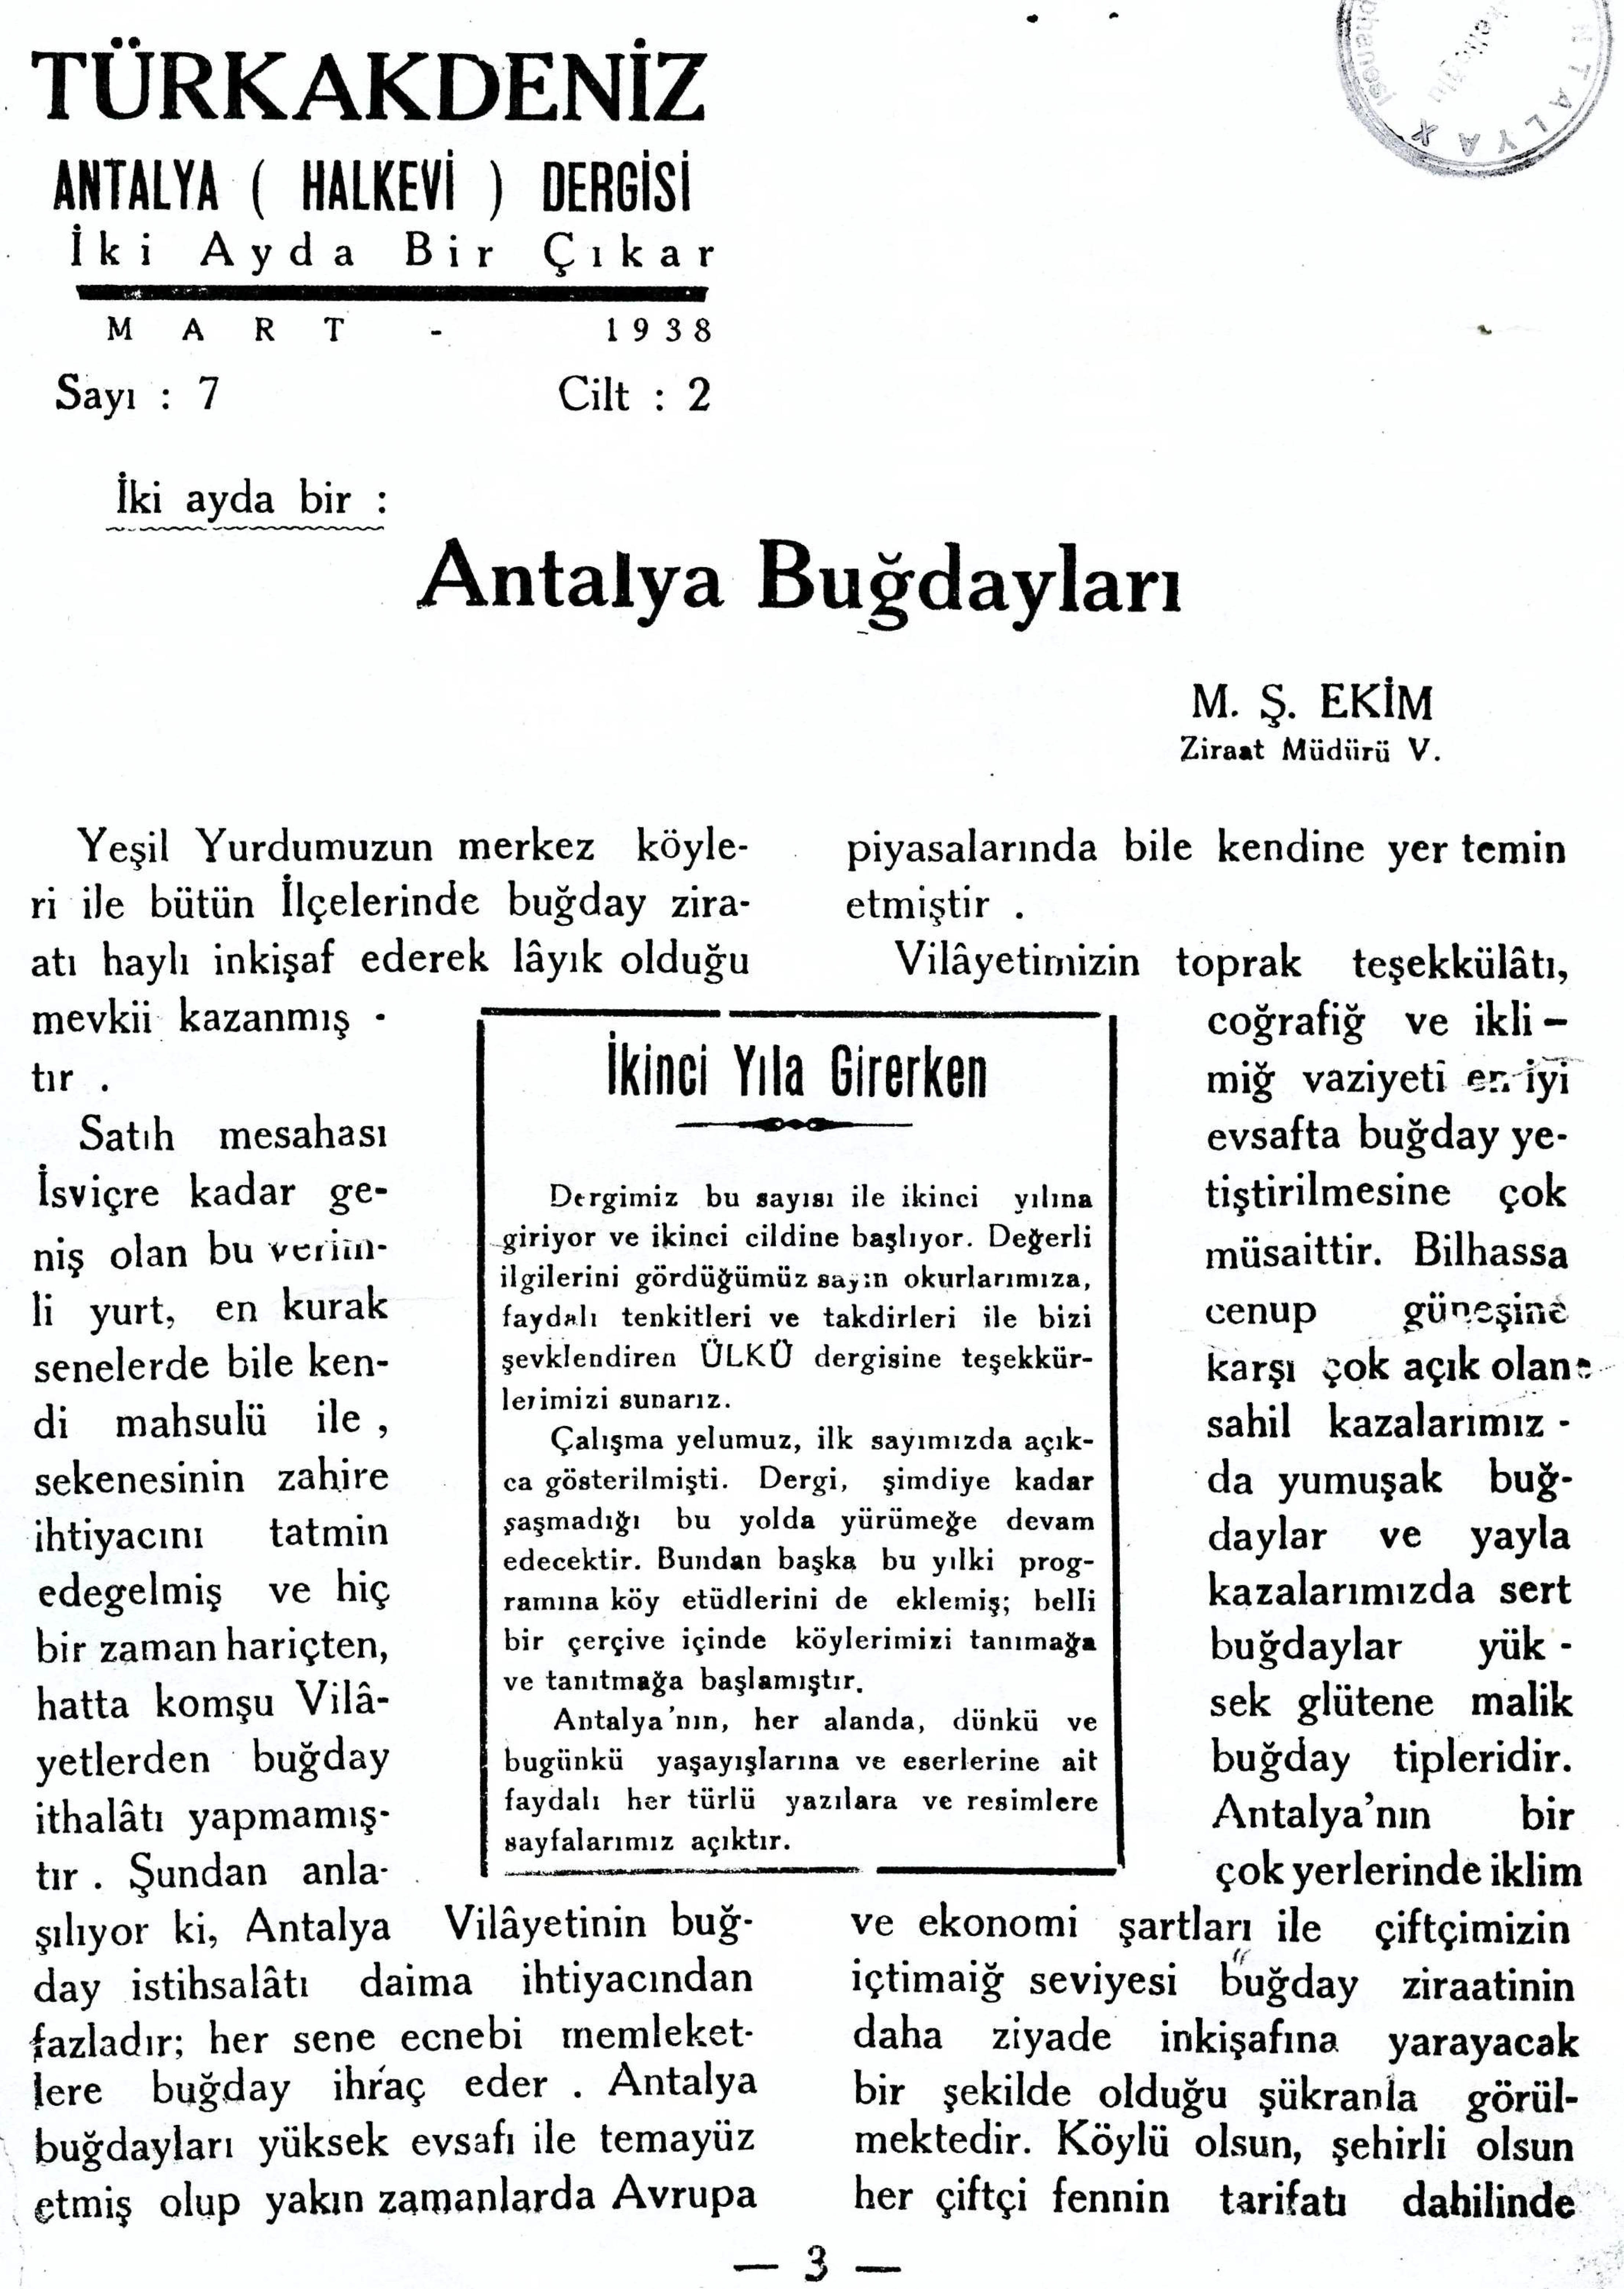 he-turk-akdeniz_1938-2(07)